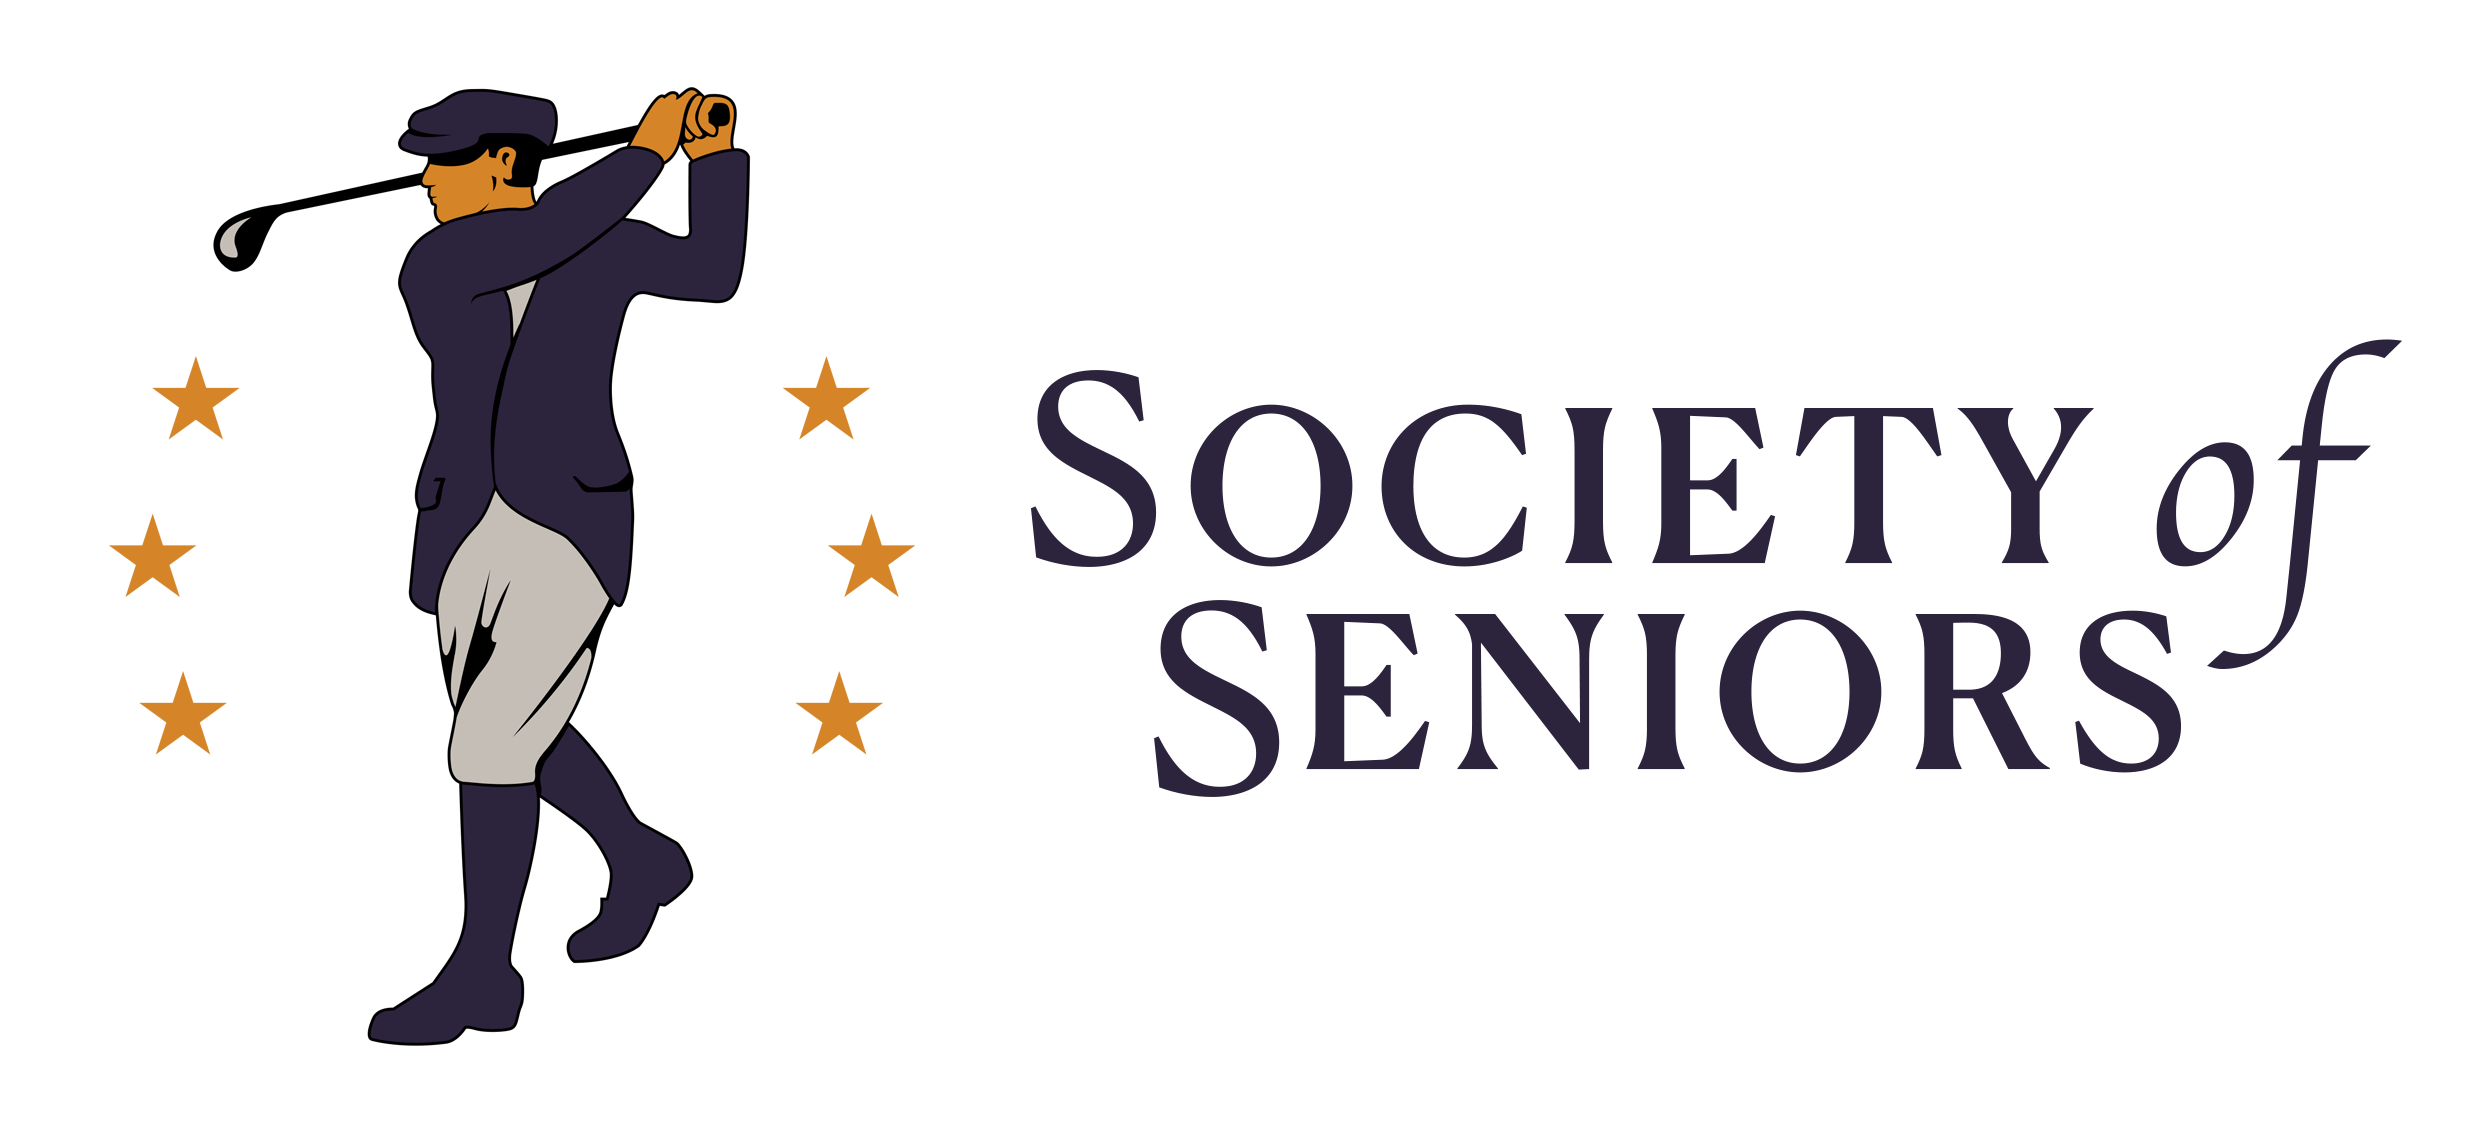 Society of Seniors